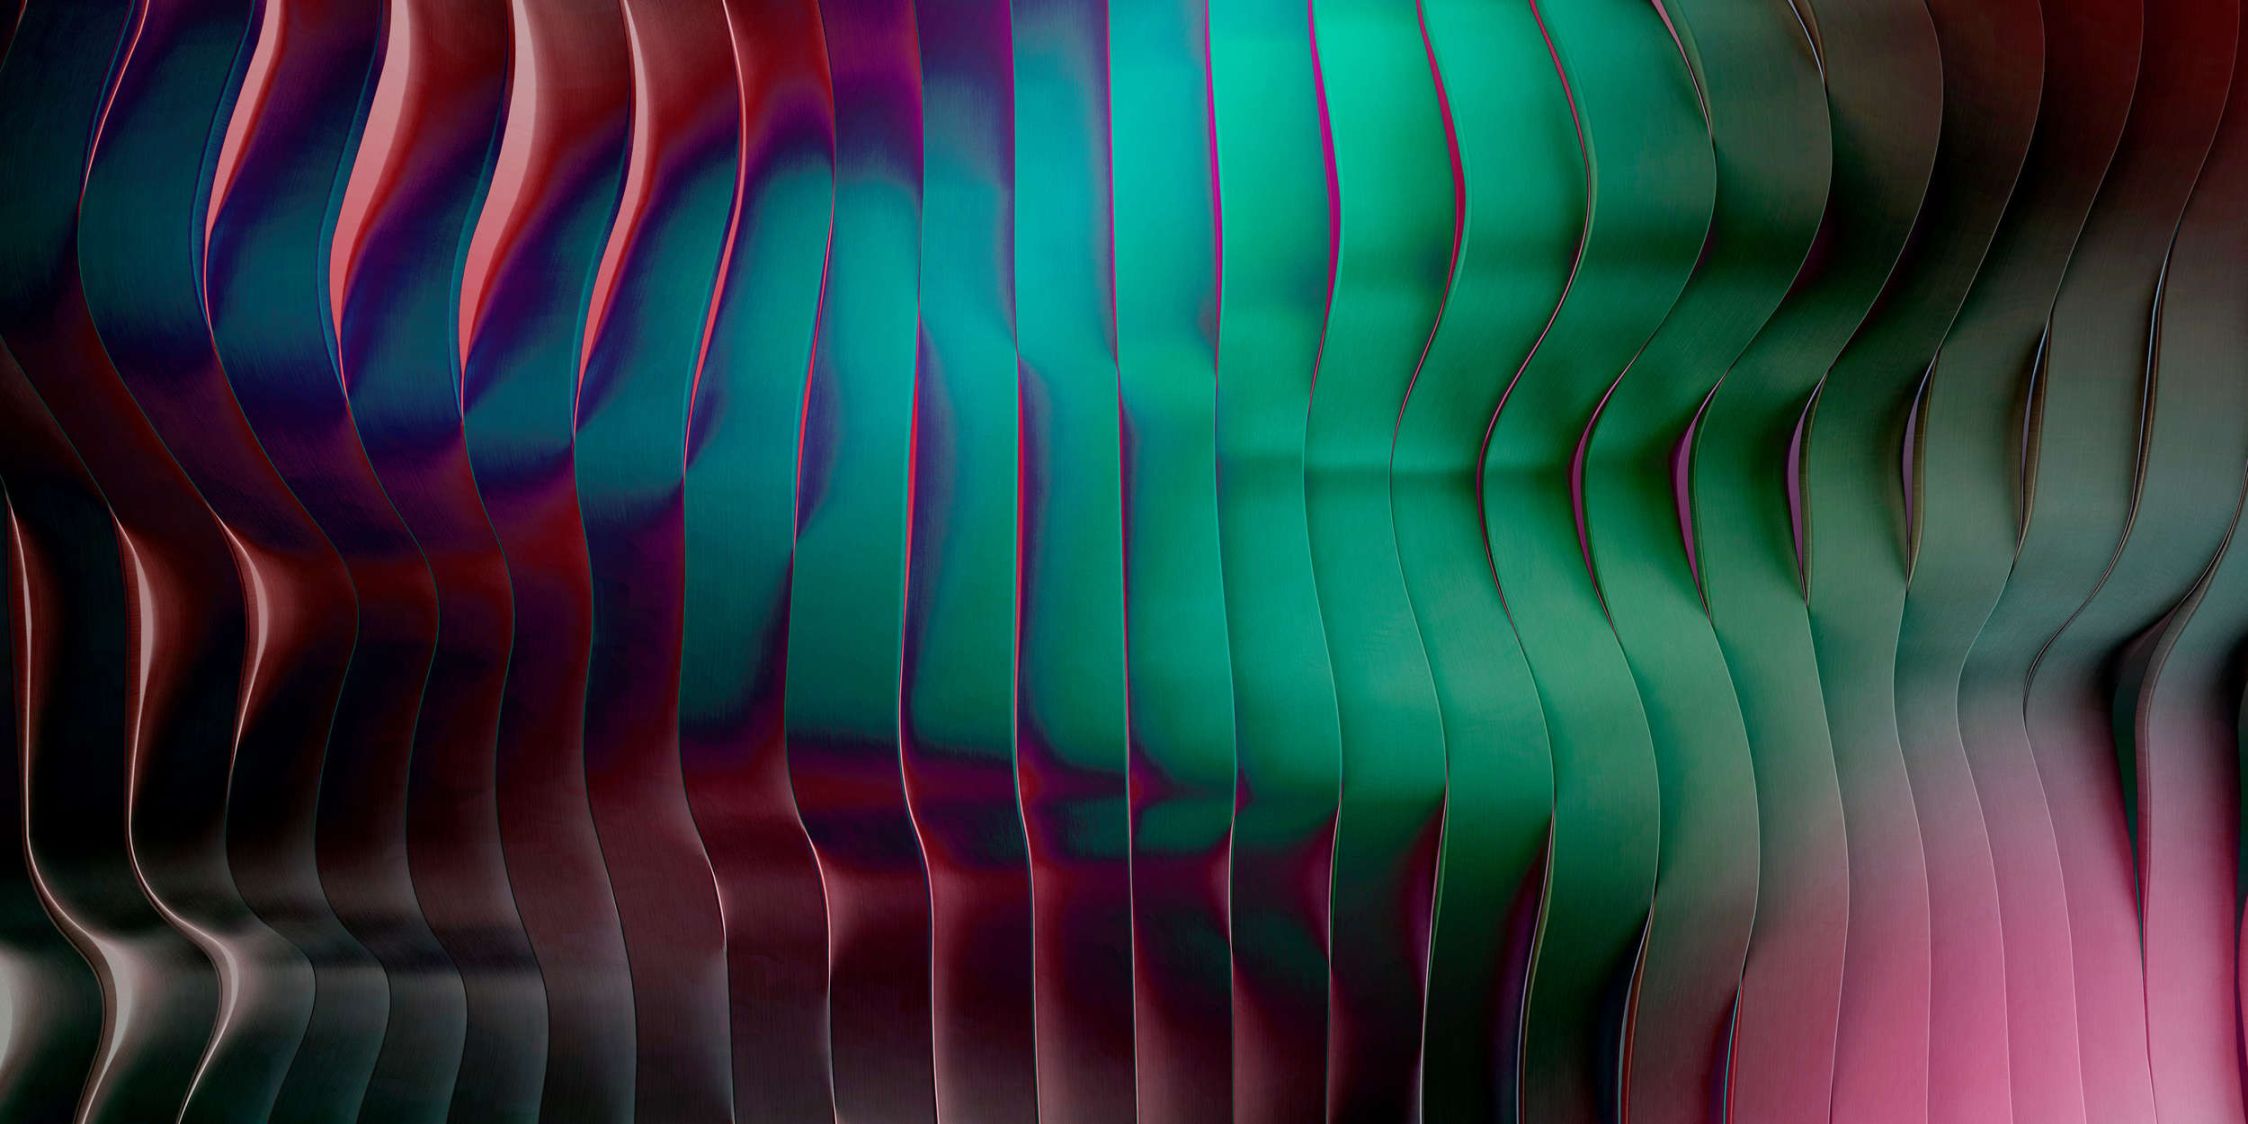             solaris 2 - Moderne Fototapete mit wellenförmiger Architektur – Neonfarben | Glattes, leicht perlmutt-schimmerndes Vlies
        